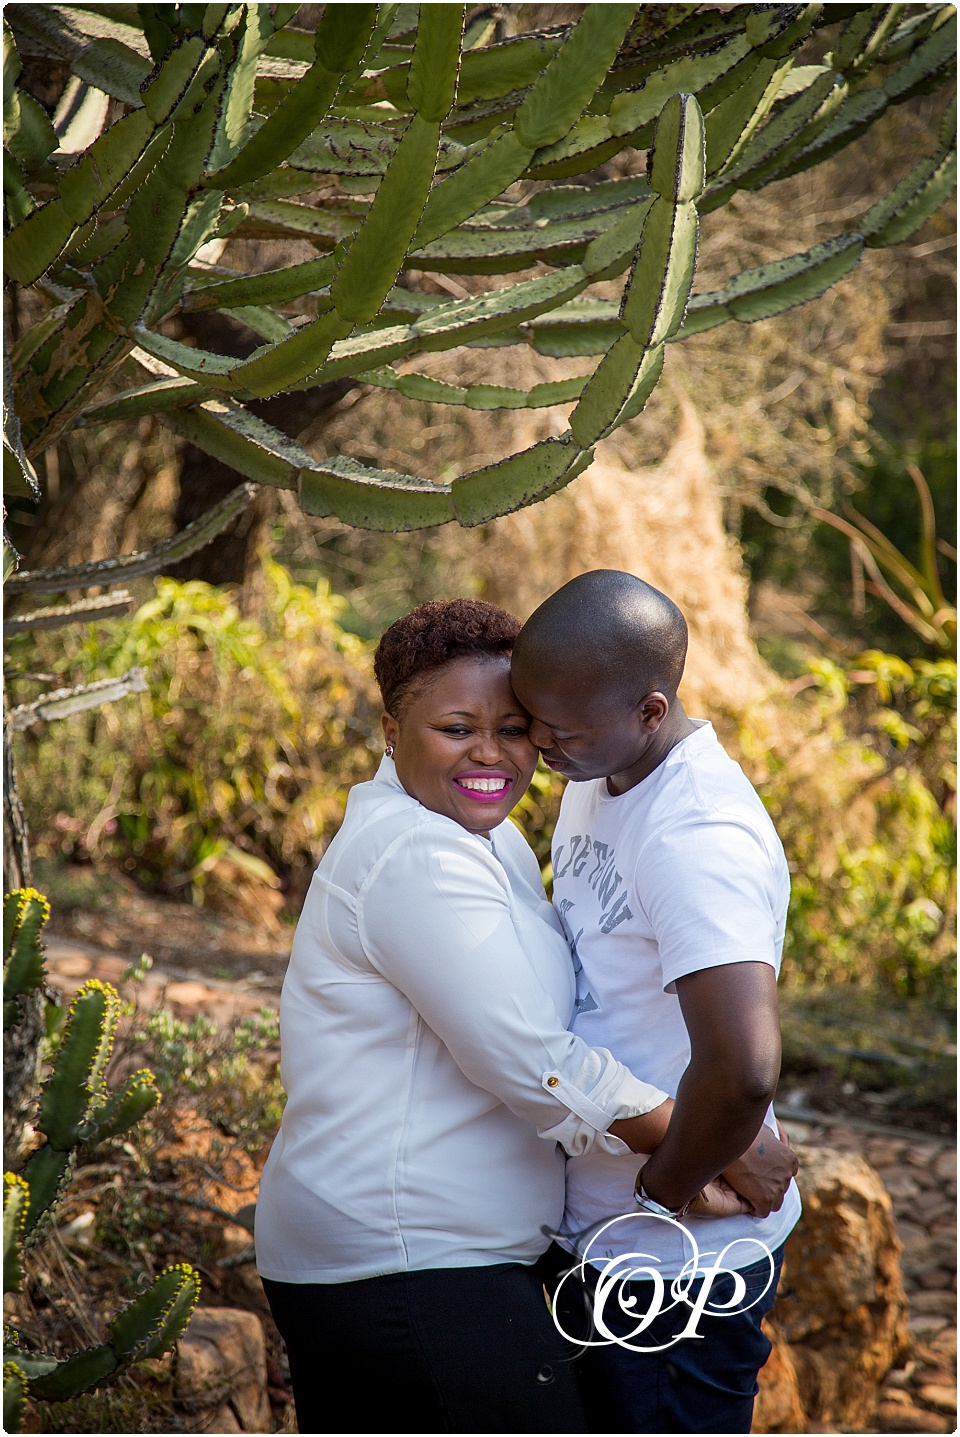 Babalwa & Sibusiso couple shoot…